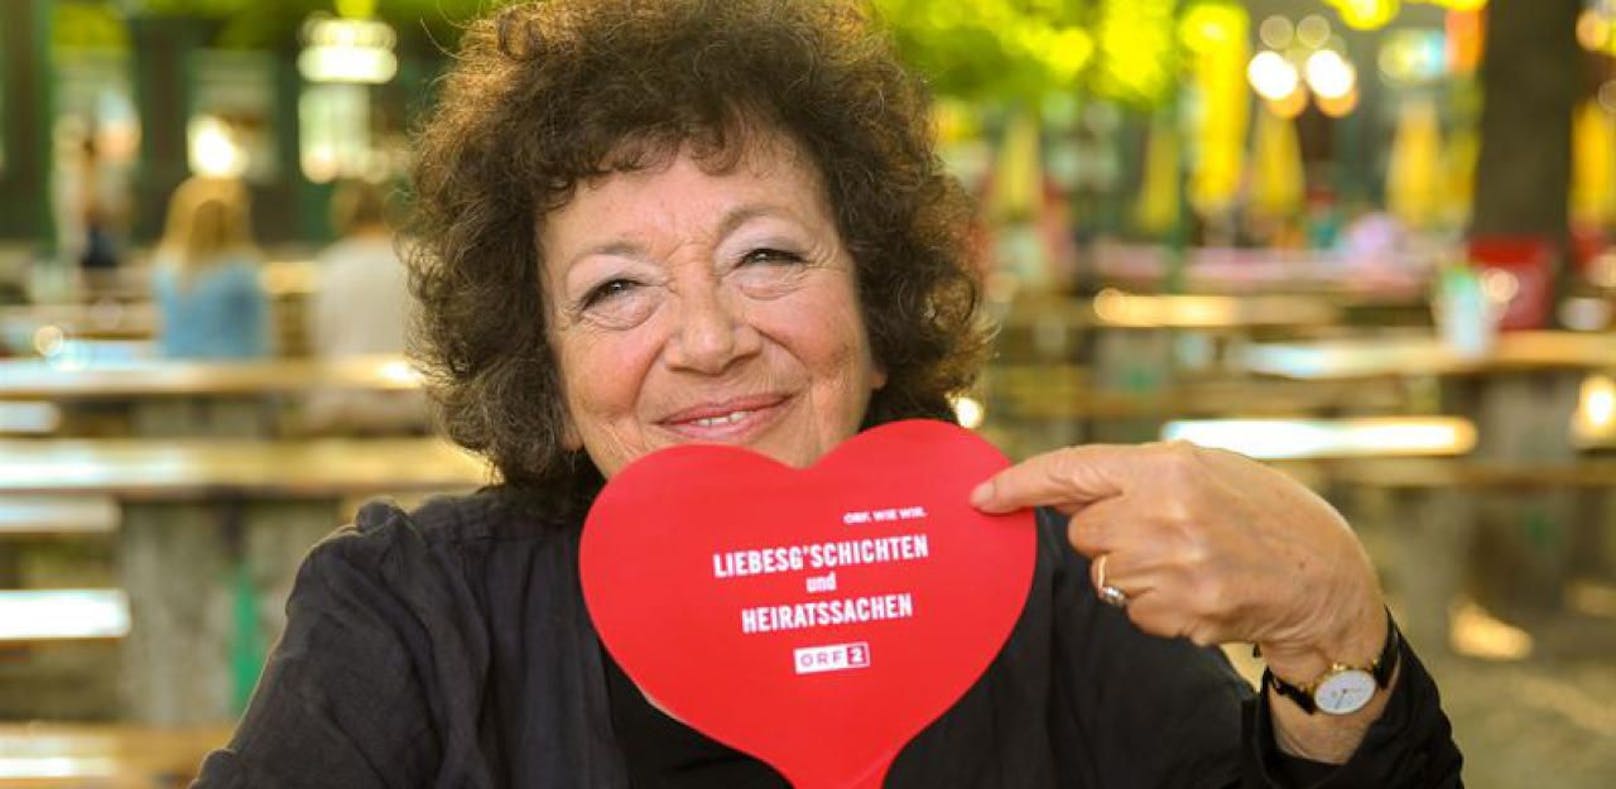 "Liebesg'schichten": Spira sucht wieder Singles